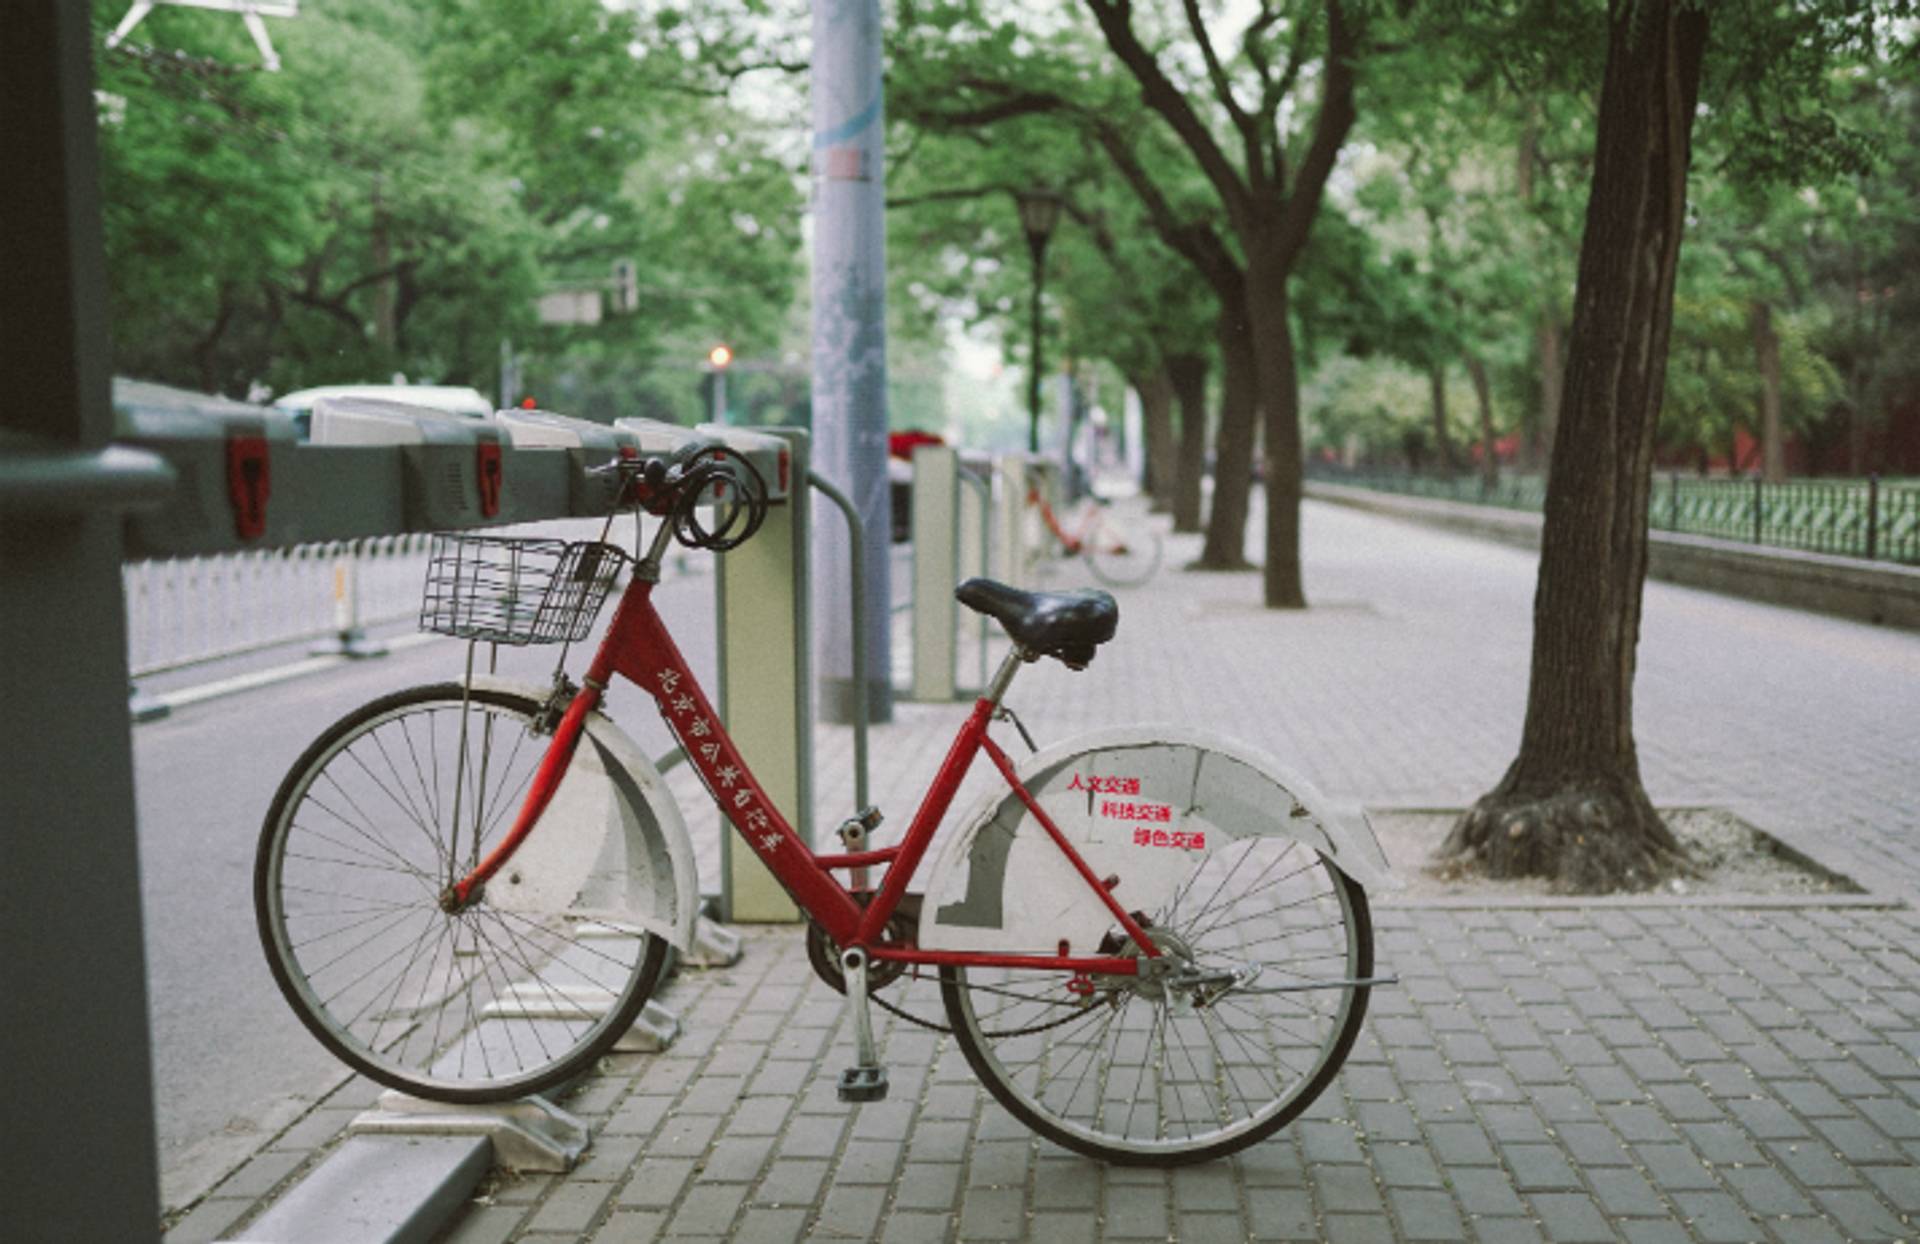 China's bike graveyards puts locals off bike sharing